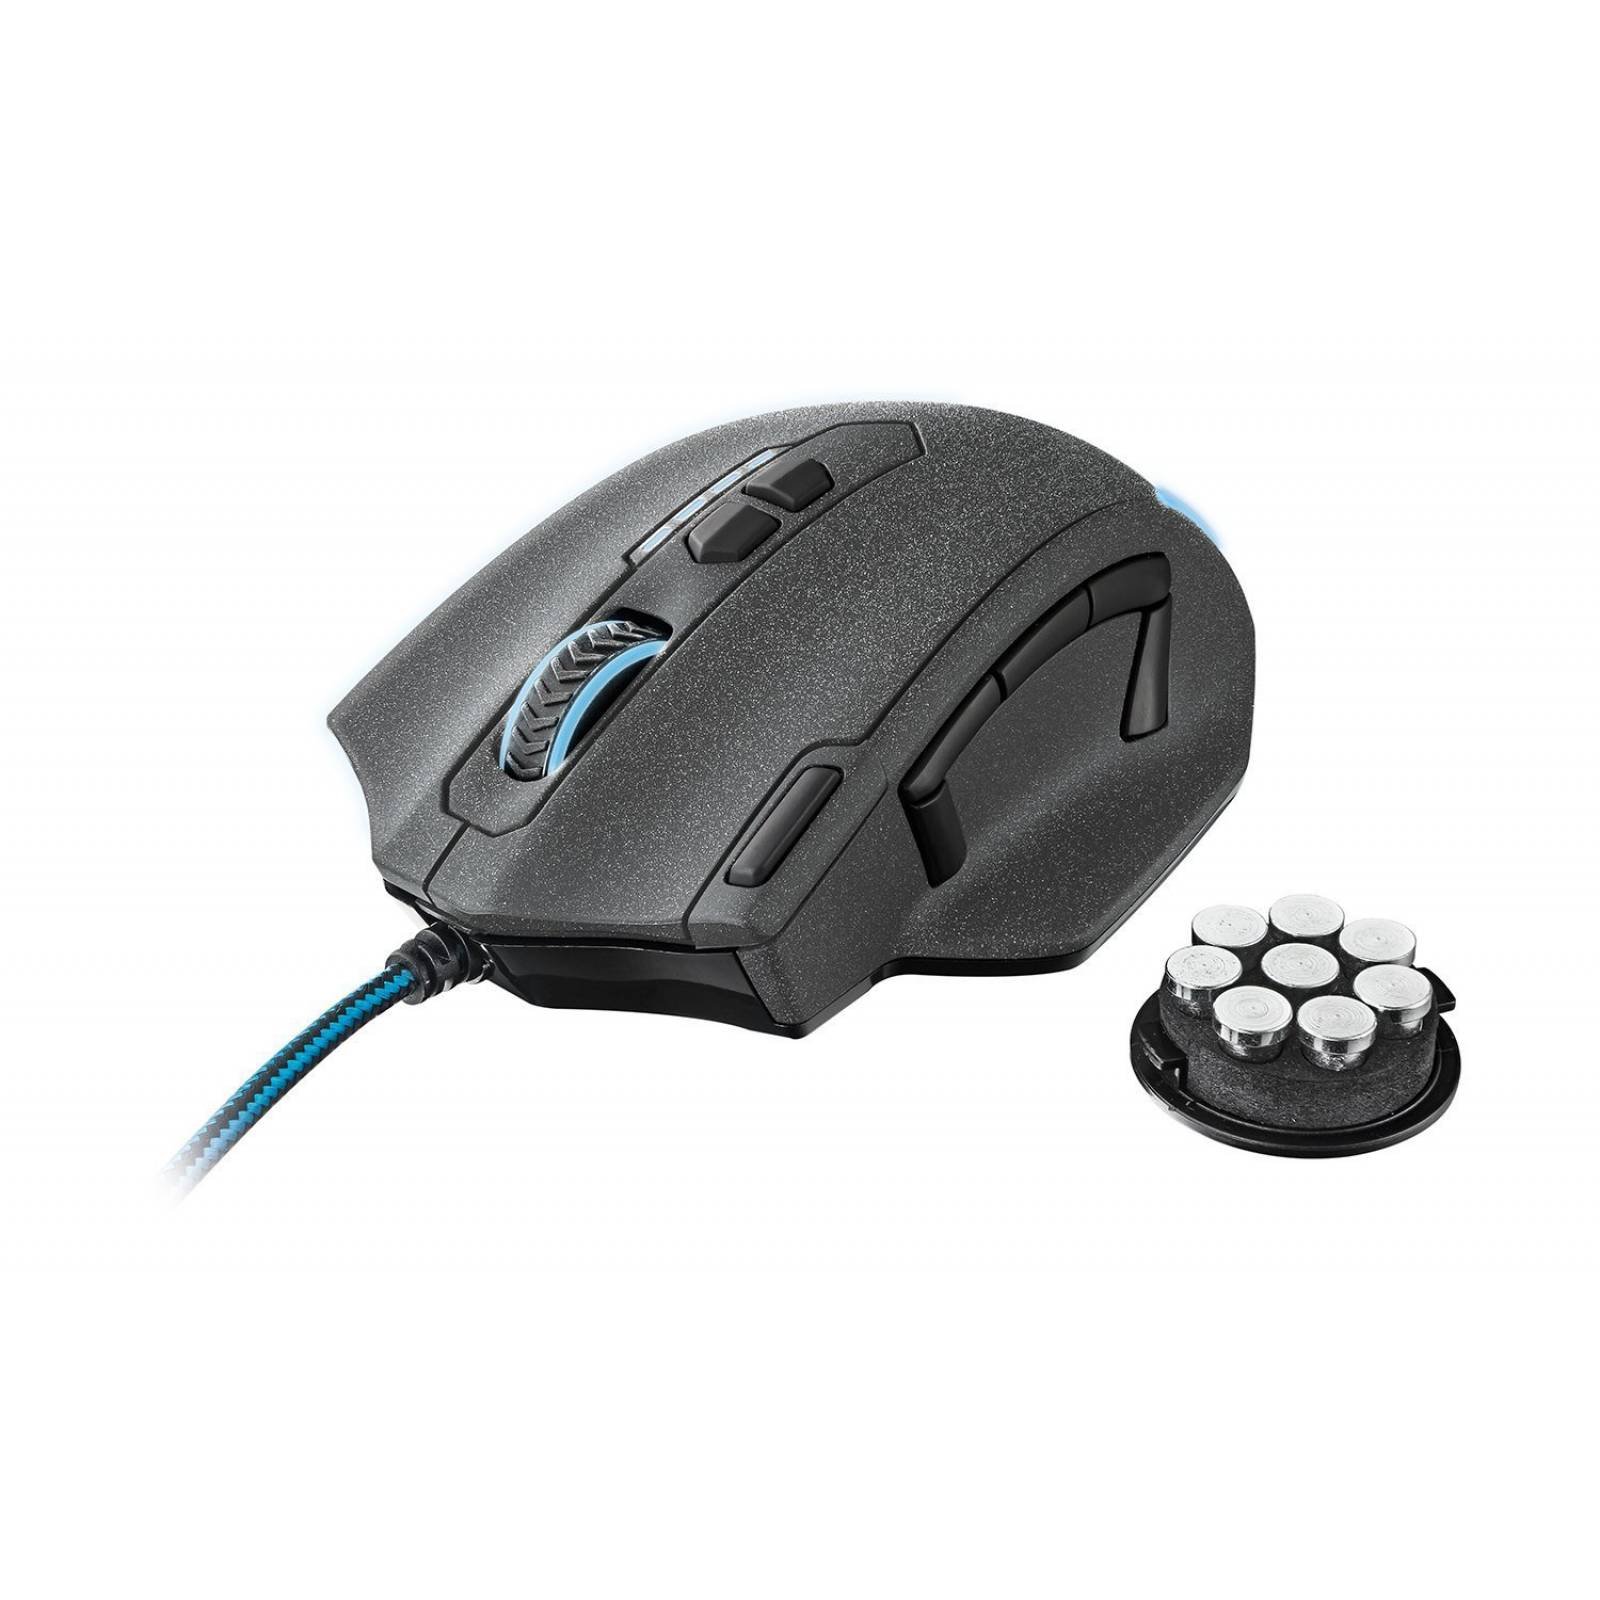 Confianza juegos GXT 155 RGB Gaming Mouse peso Tuning -Negro